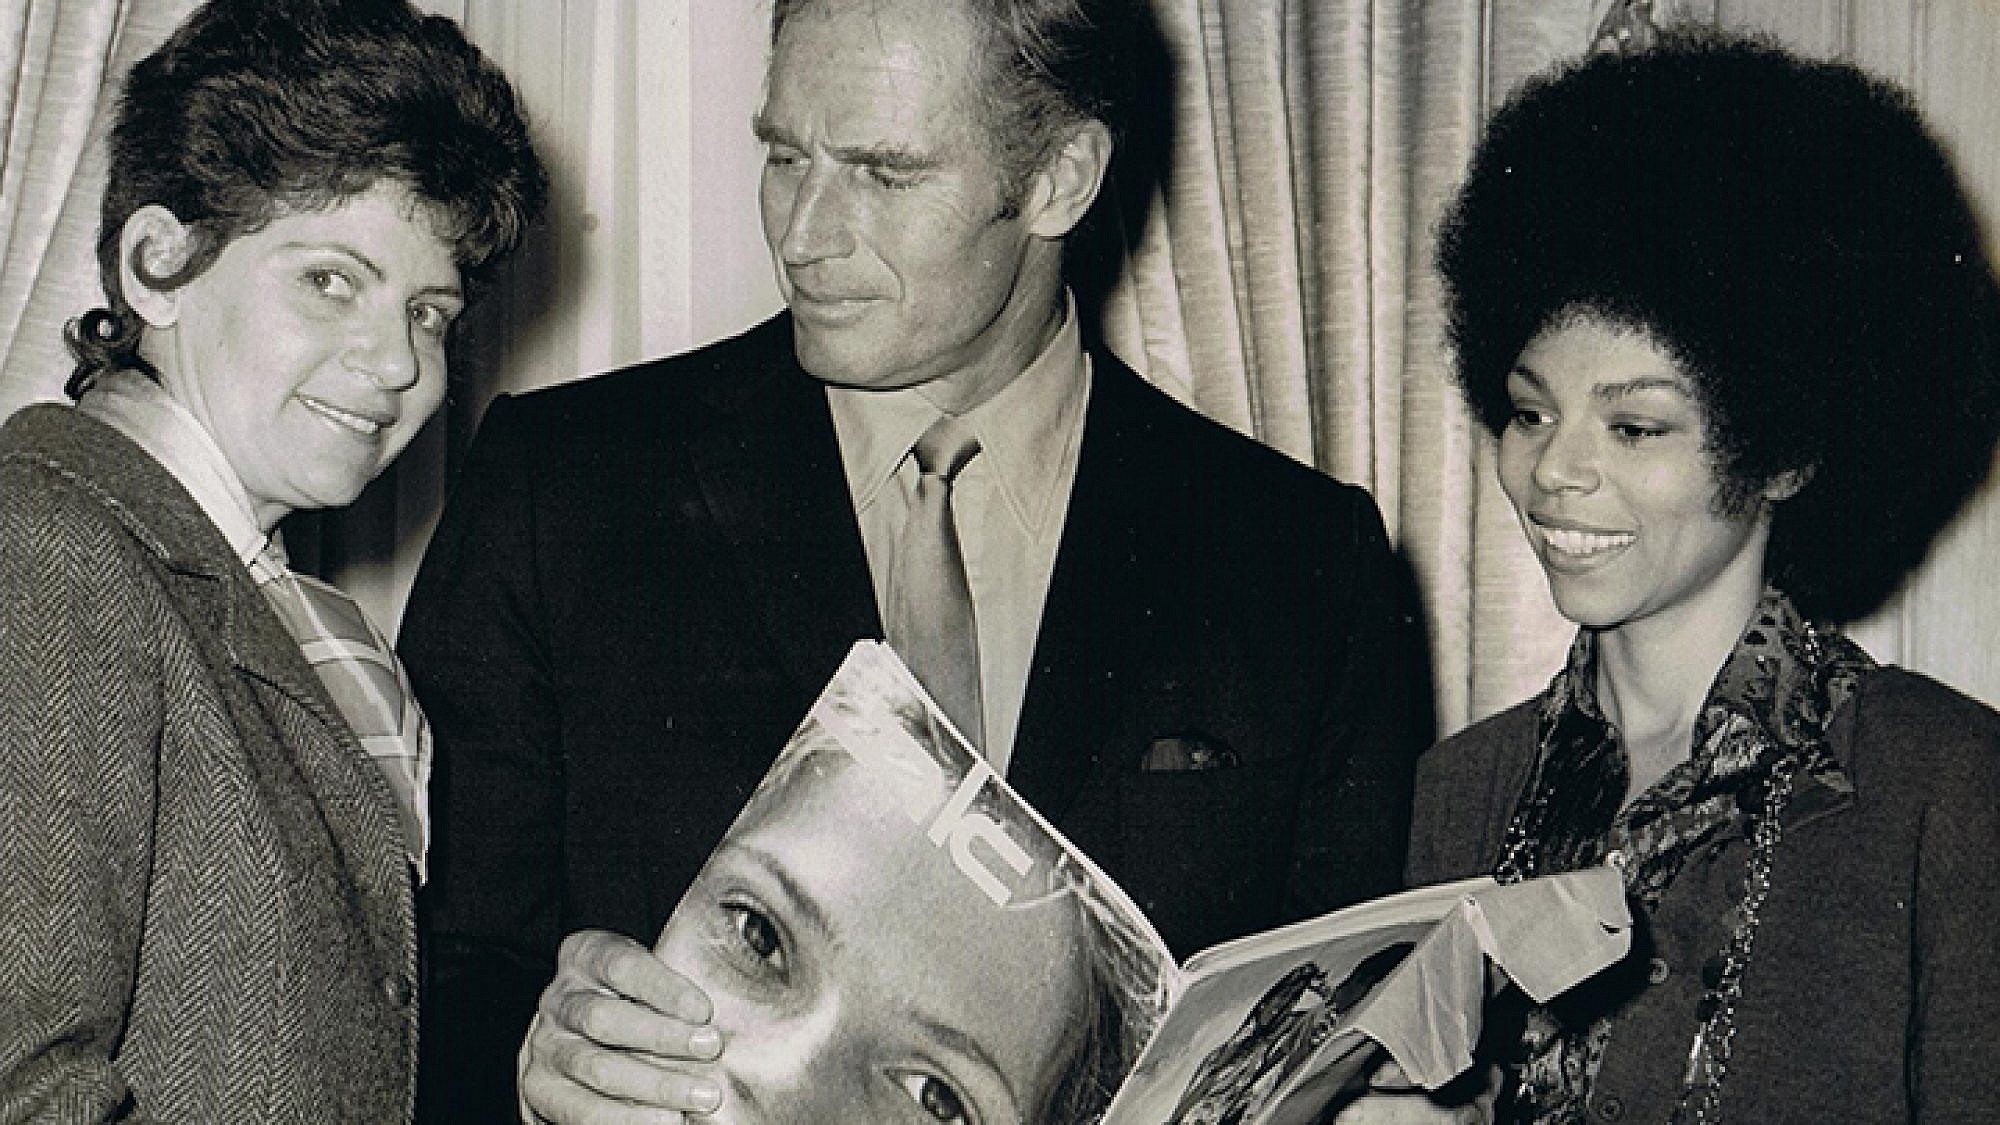 רות סירקיס (משמאל) עם השחקן צ'רלטון הסטון ובידו גיליון "את", הוליווד 1970